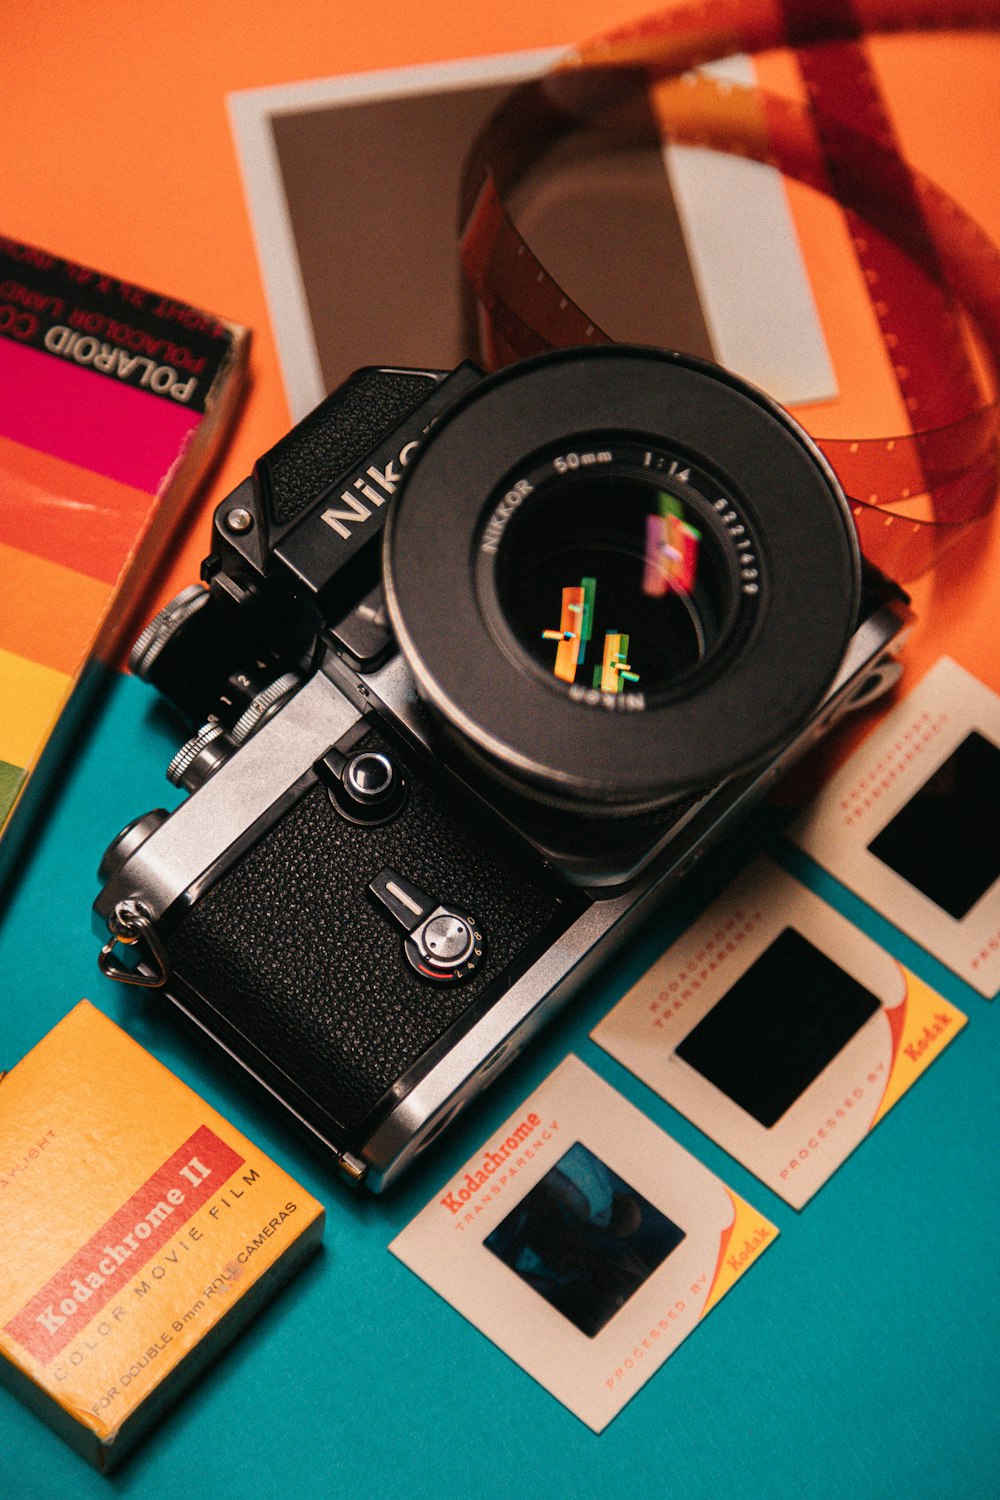 Appareil photo reflex numérique Nikon noir sur surface bleue